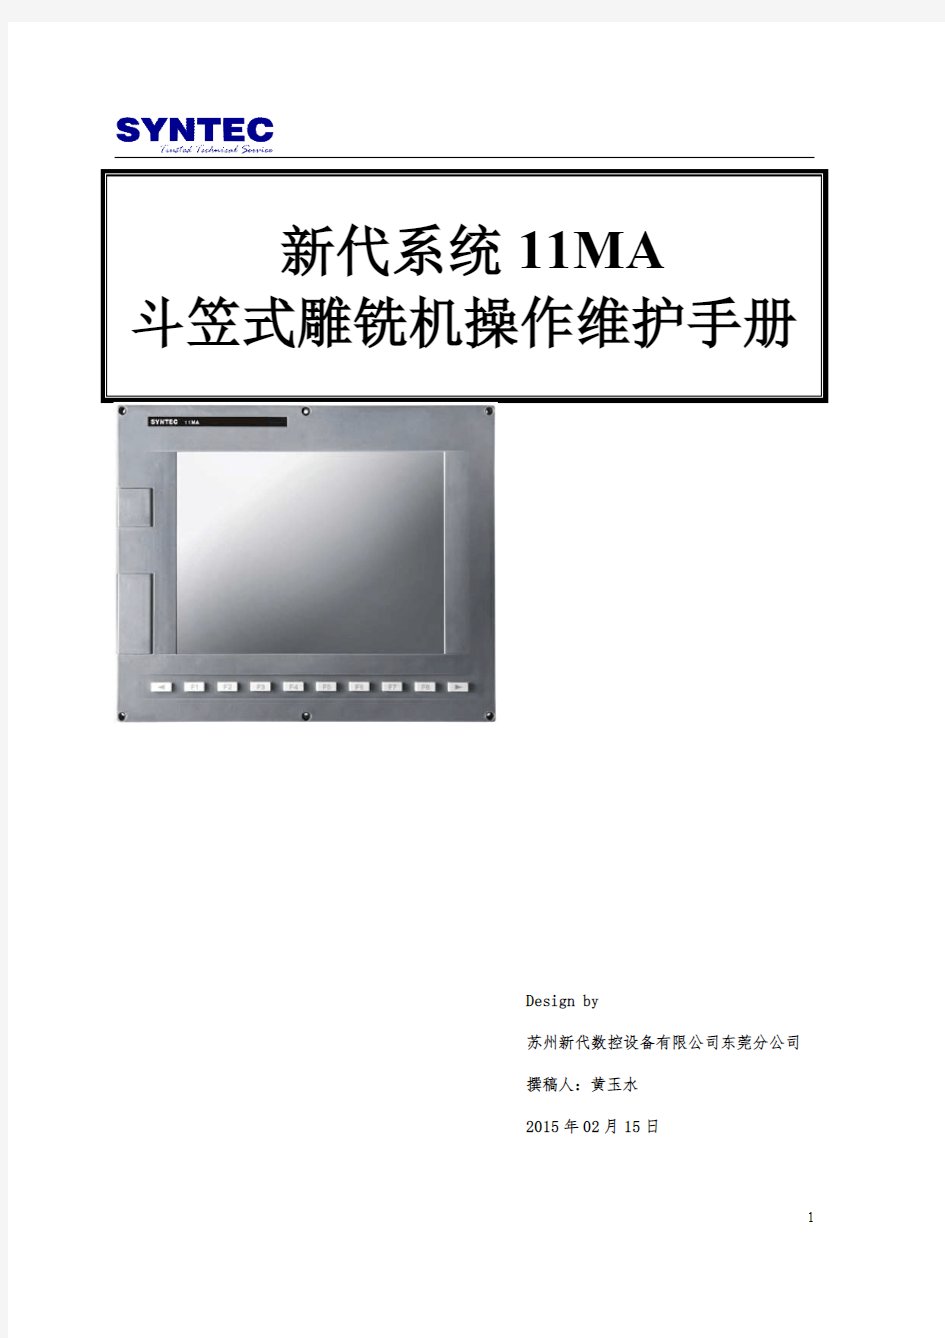 11MA斗笠式操作维护手册